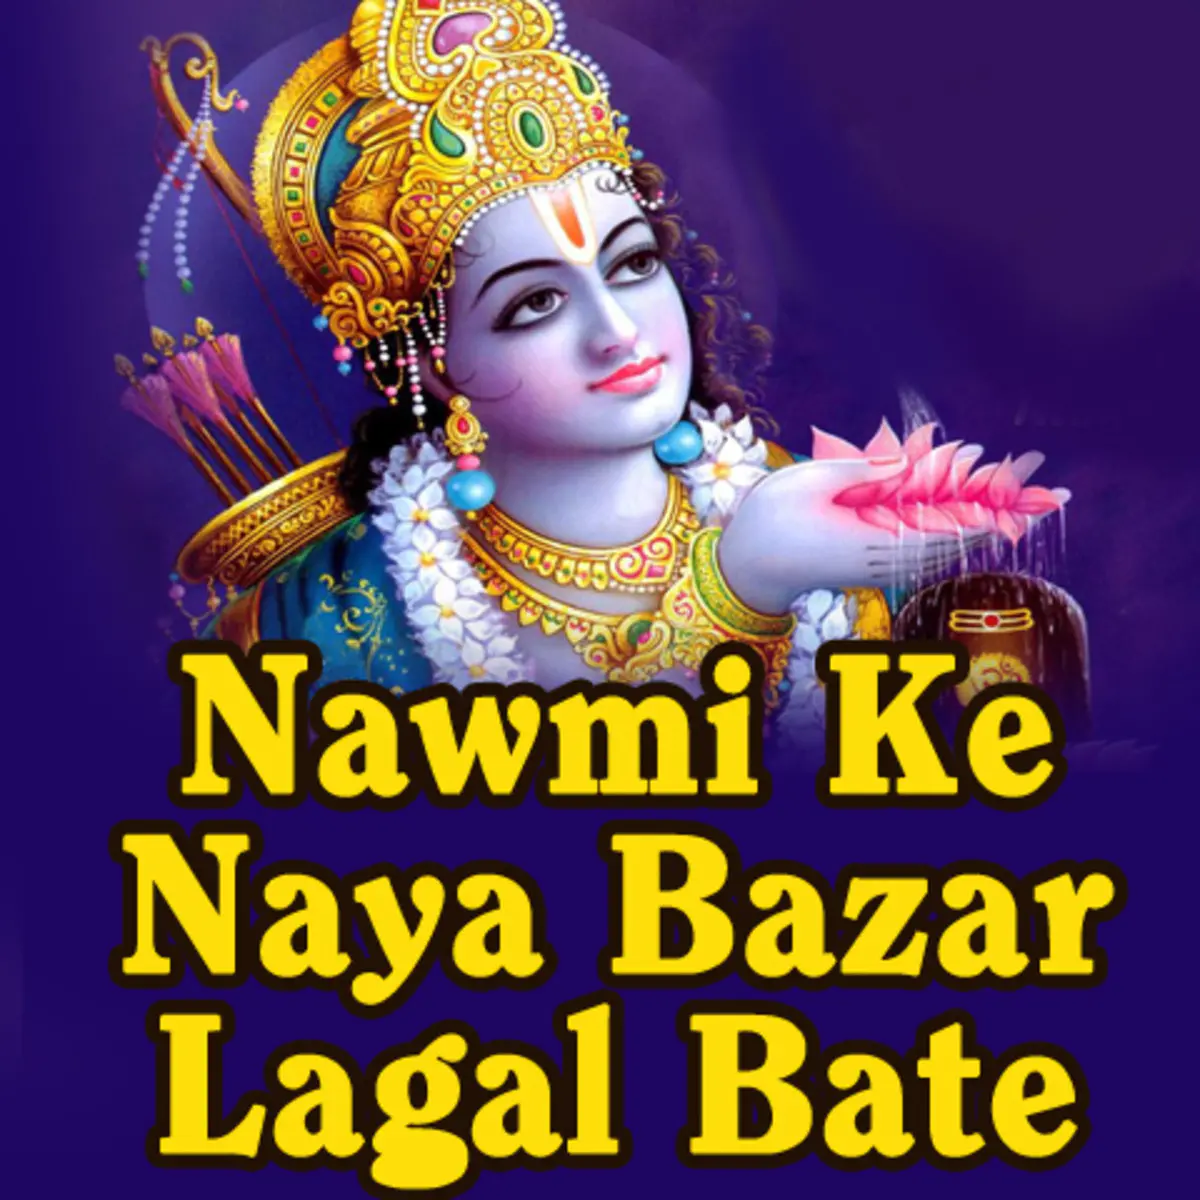 mwa Mahuiya Ke Mp3 Song Download Nawmi Ke Naya Bazar Lagal Bate mwa Mahuiya Ke आम व म ह य क Bhojpuri Song By Manjul Thakur On Gaana Com